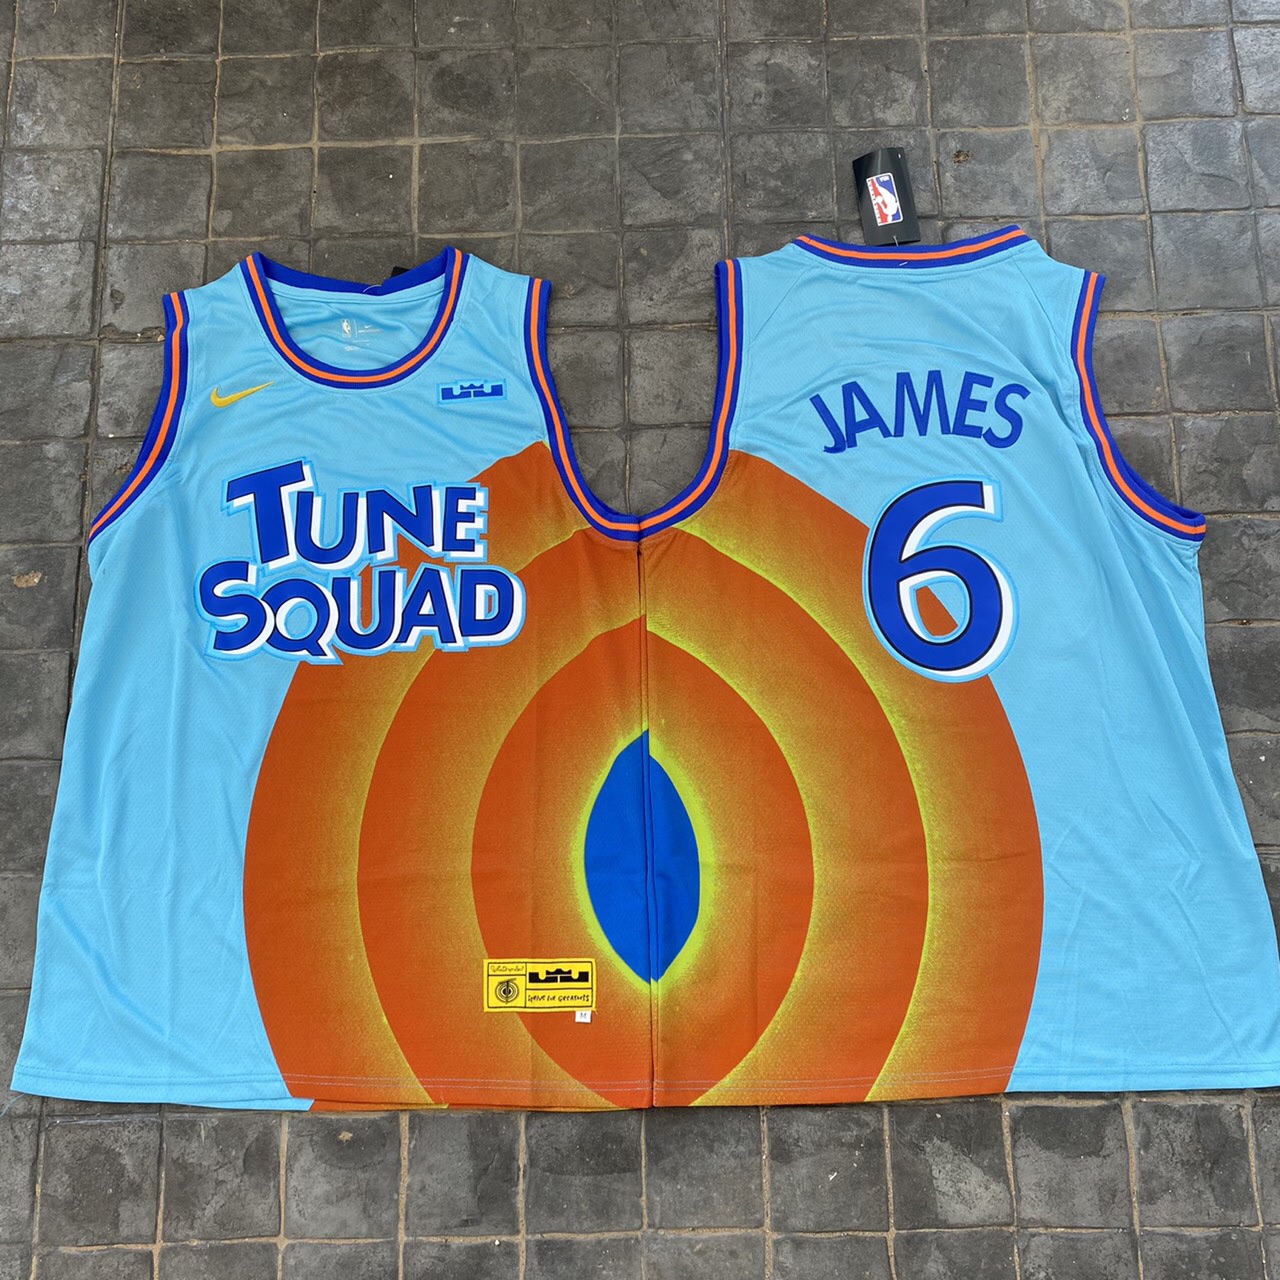 เสื้อบาสเกตบอลbasketball.jerseys(พร้อมจัดส่ง)#New.TUNE SQUAD.2.james.6.